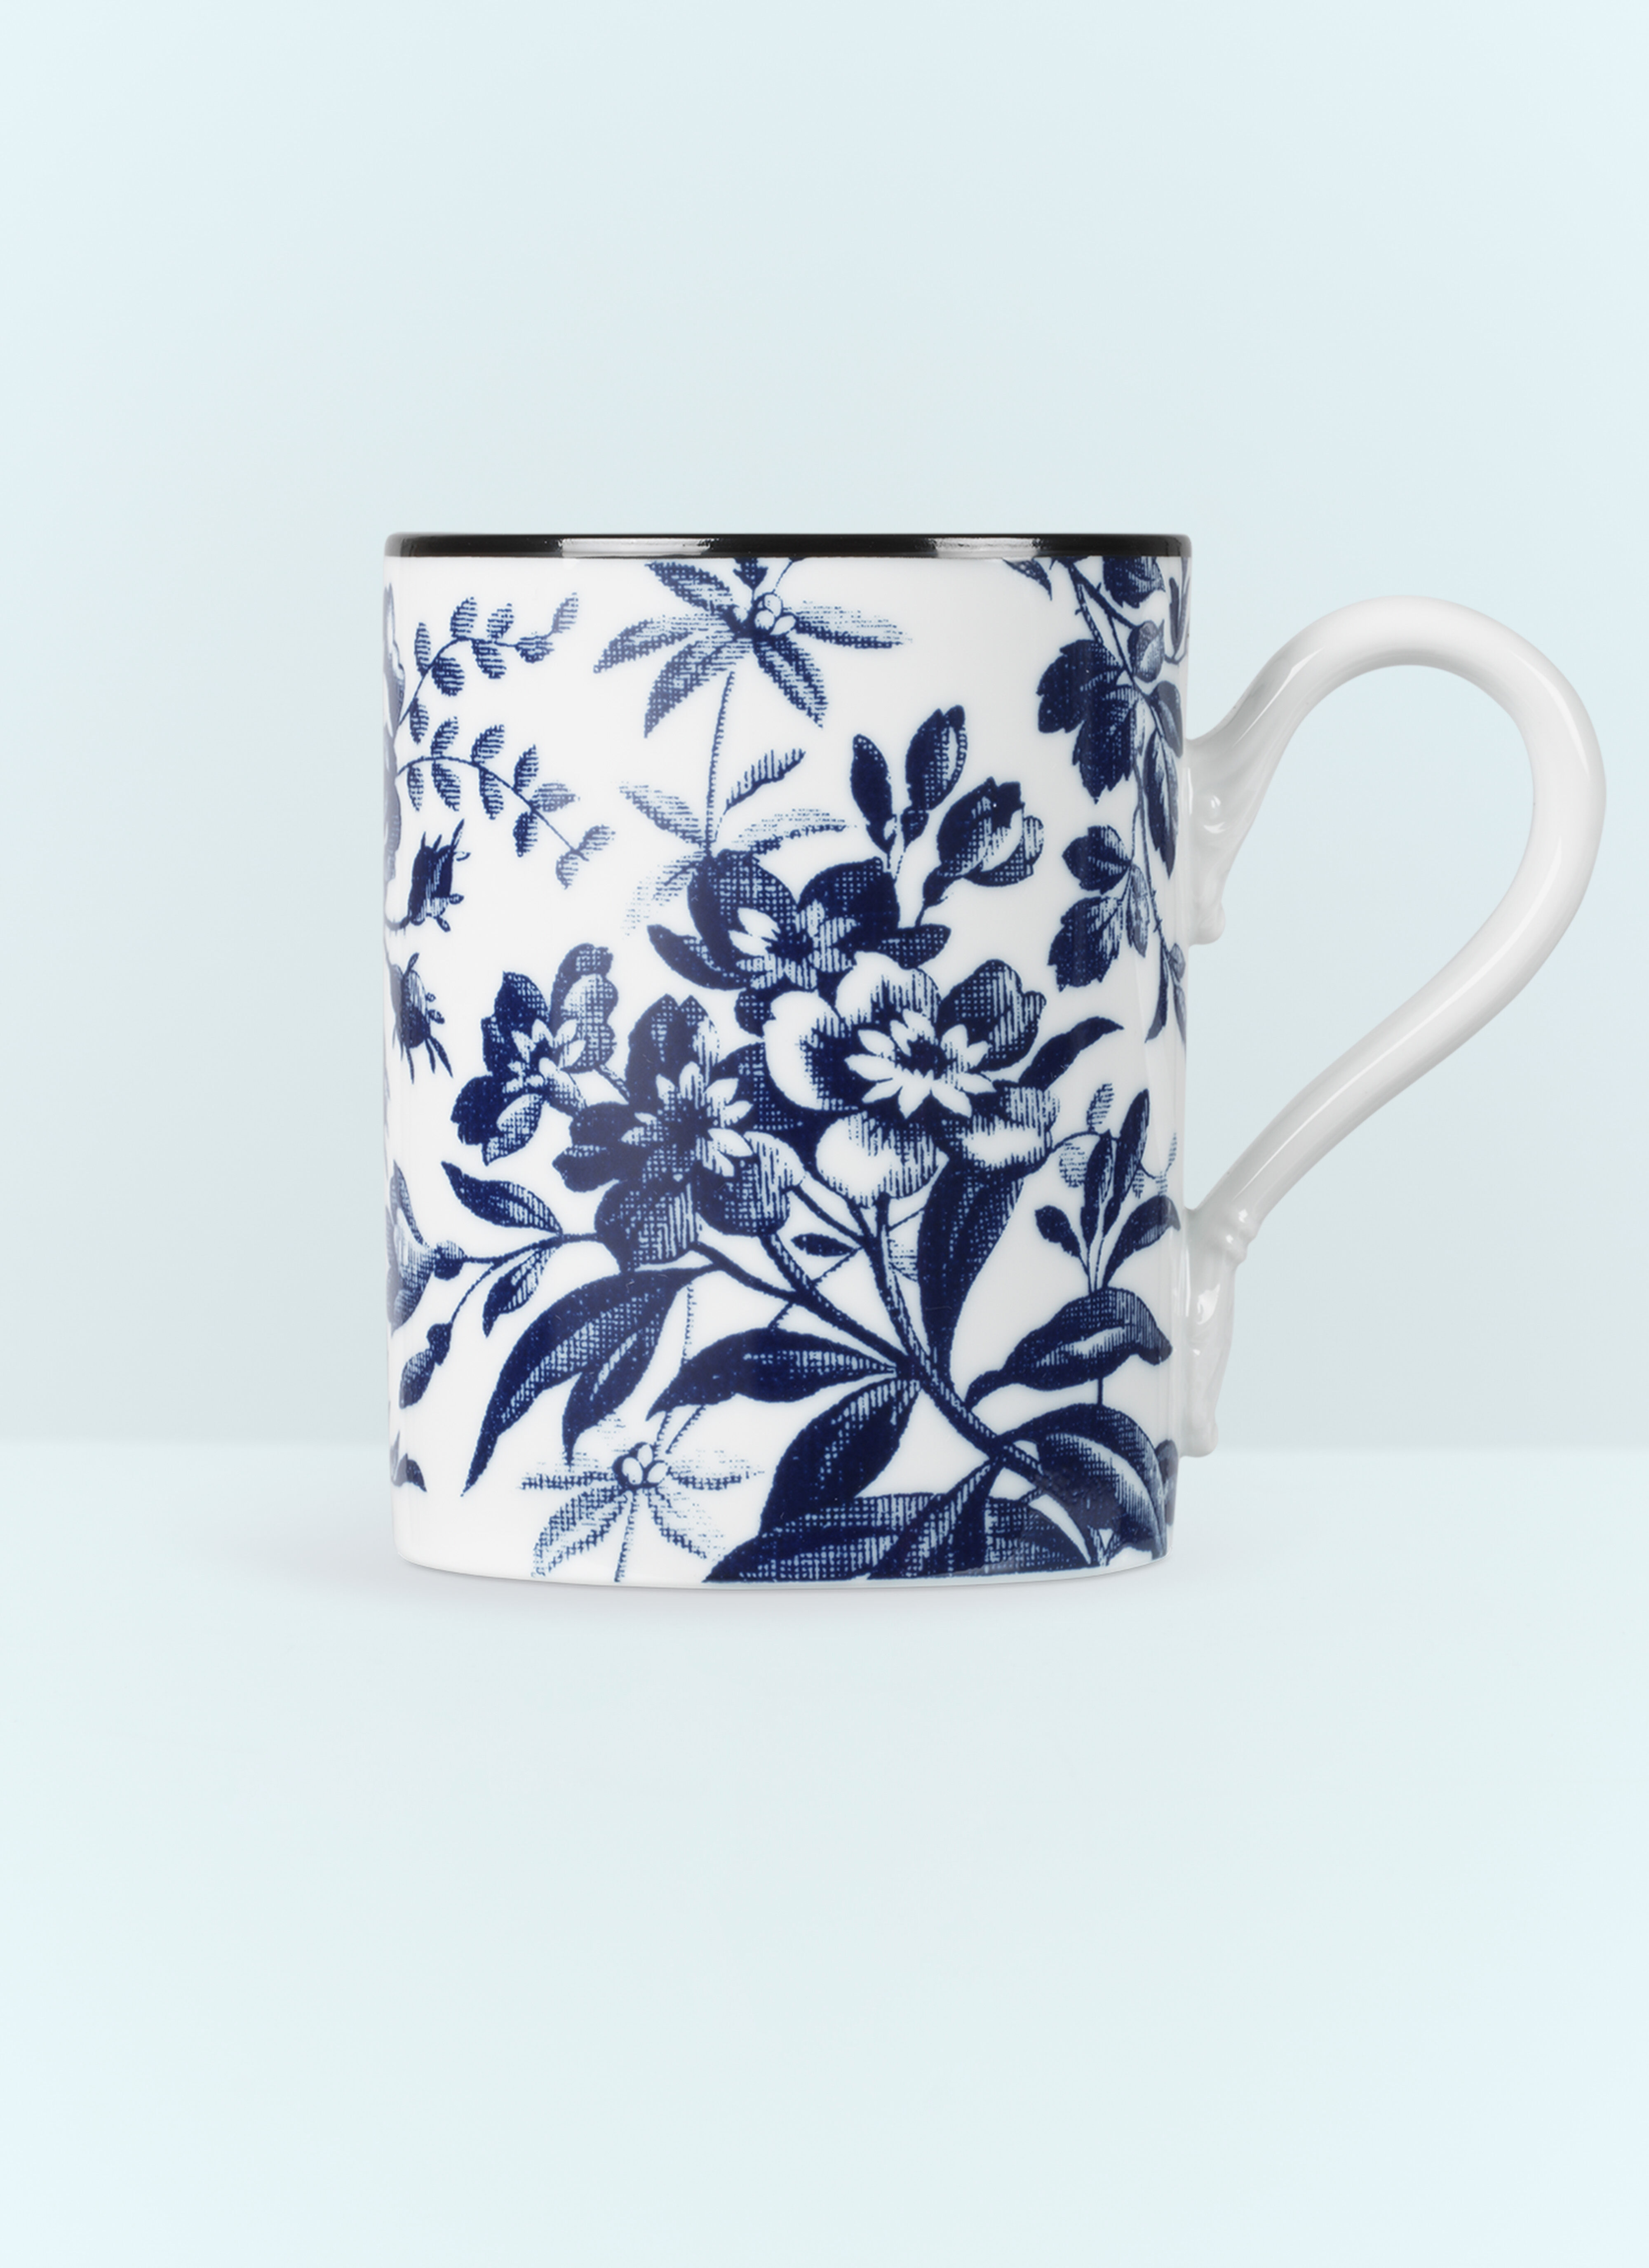 Polspotten Herbarium Mug Blue wps0691152